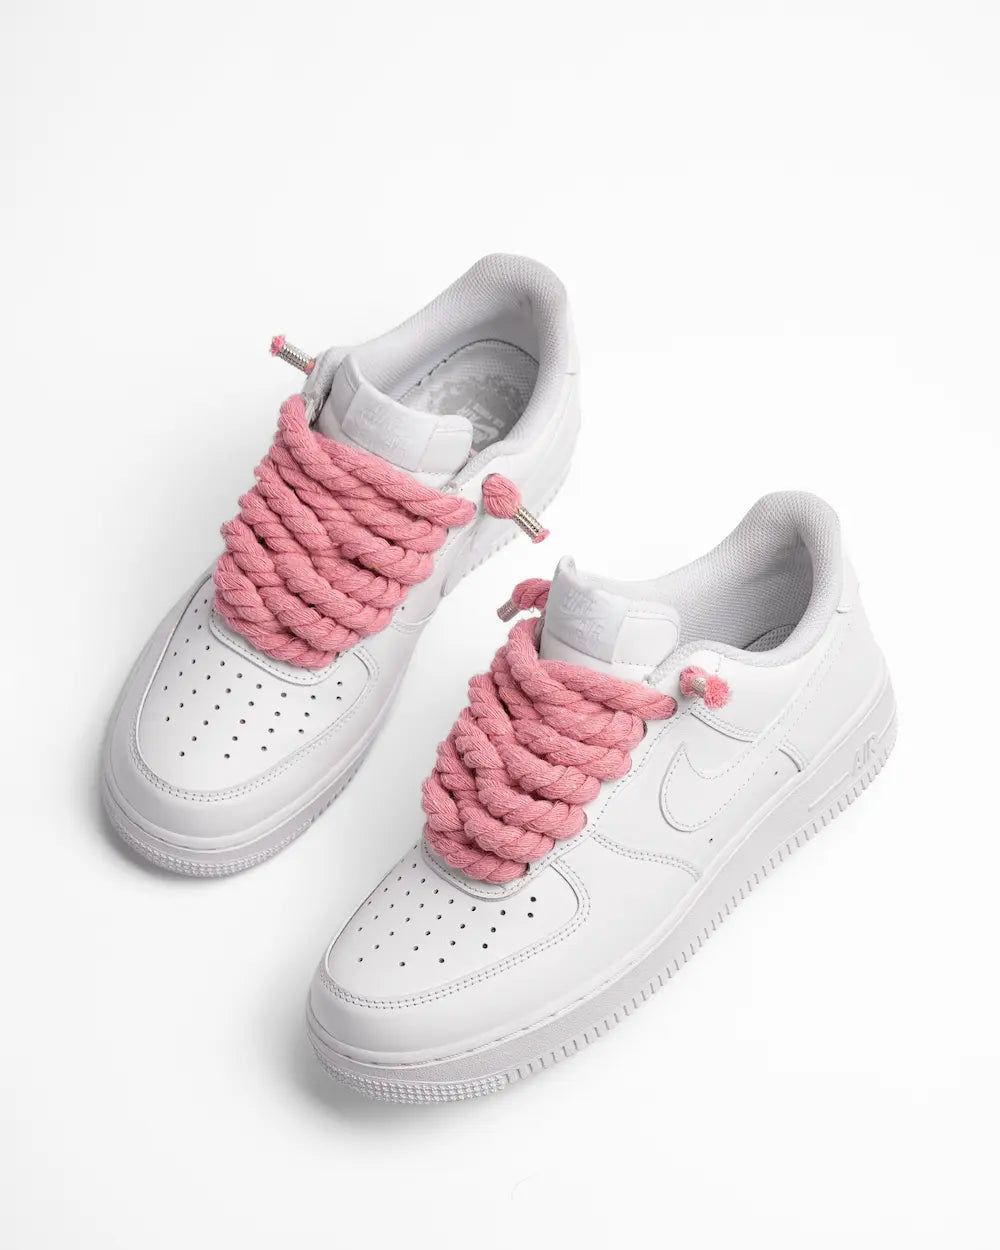 Nike Air Force 1 bianca personalizzata con lacci in corda rosa pastello